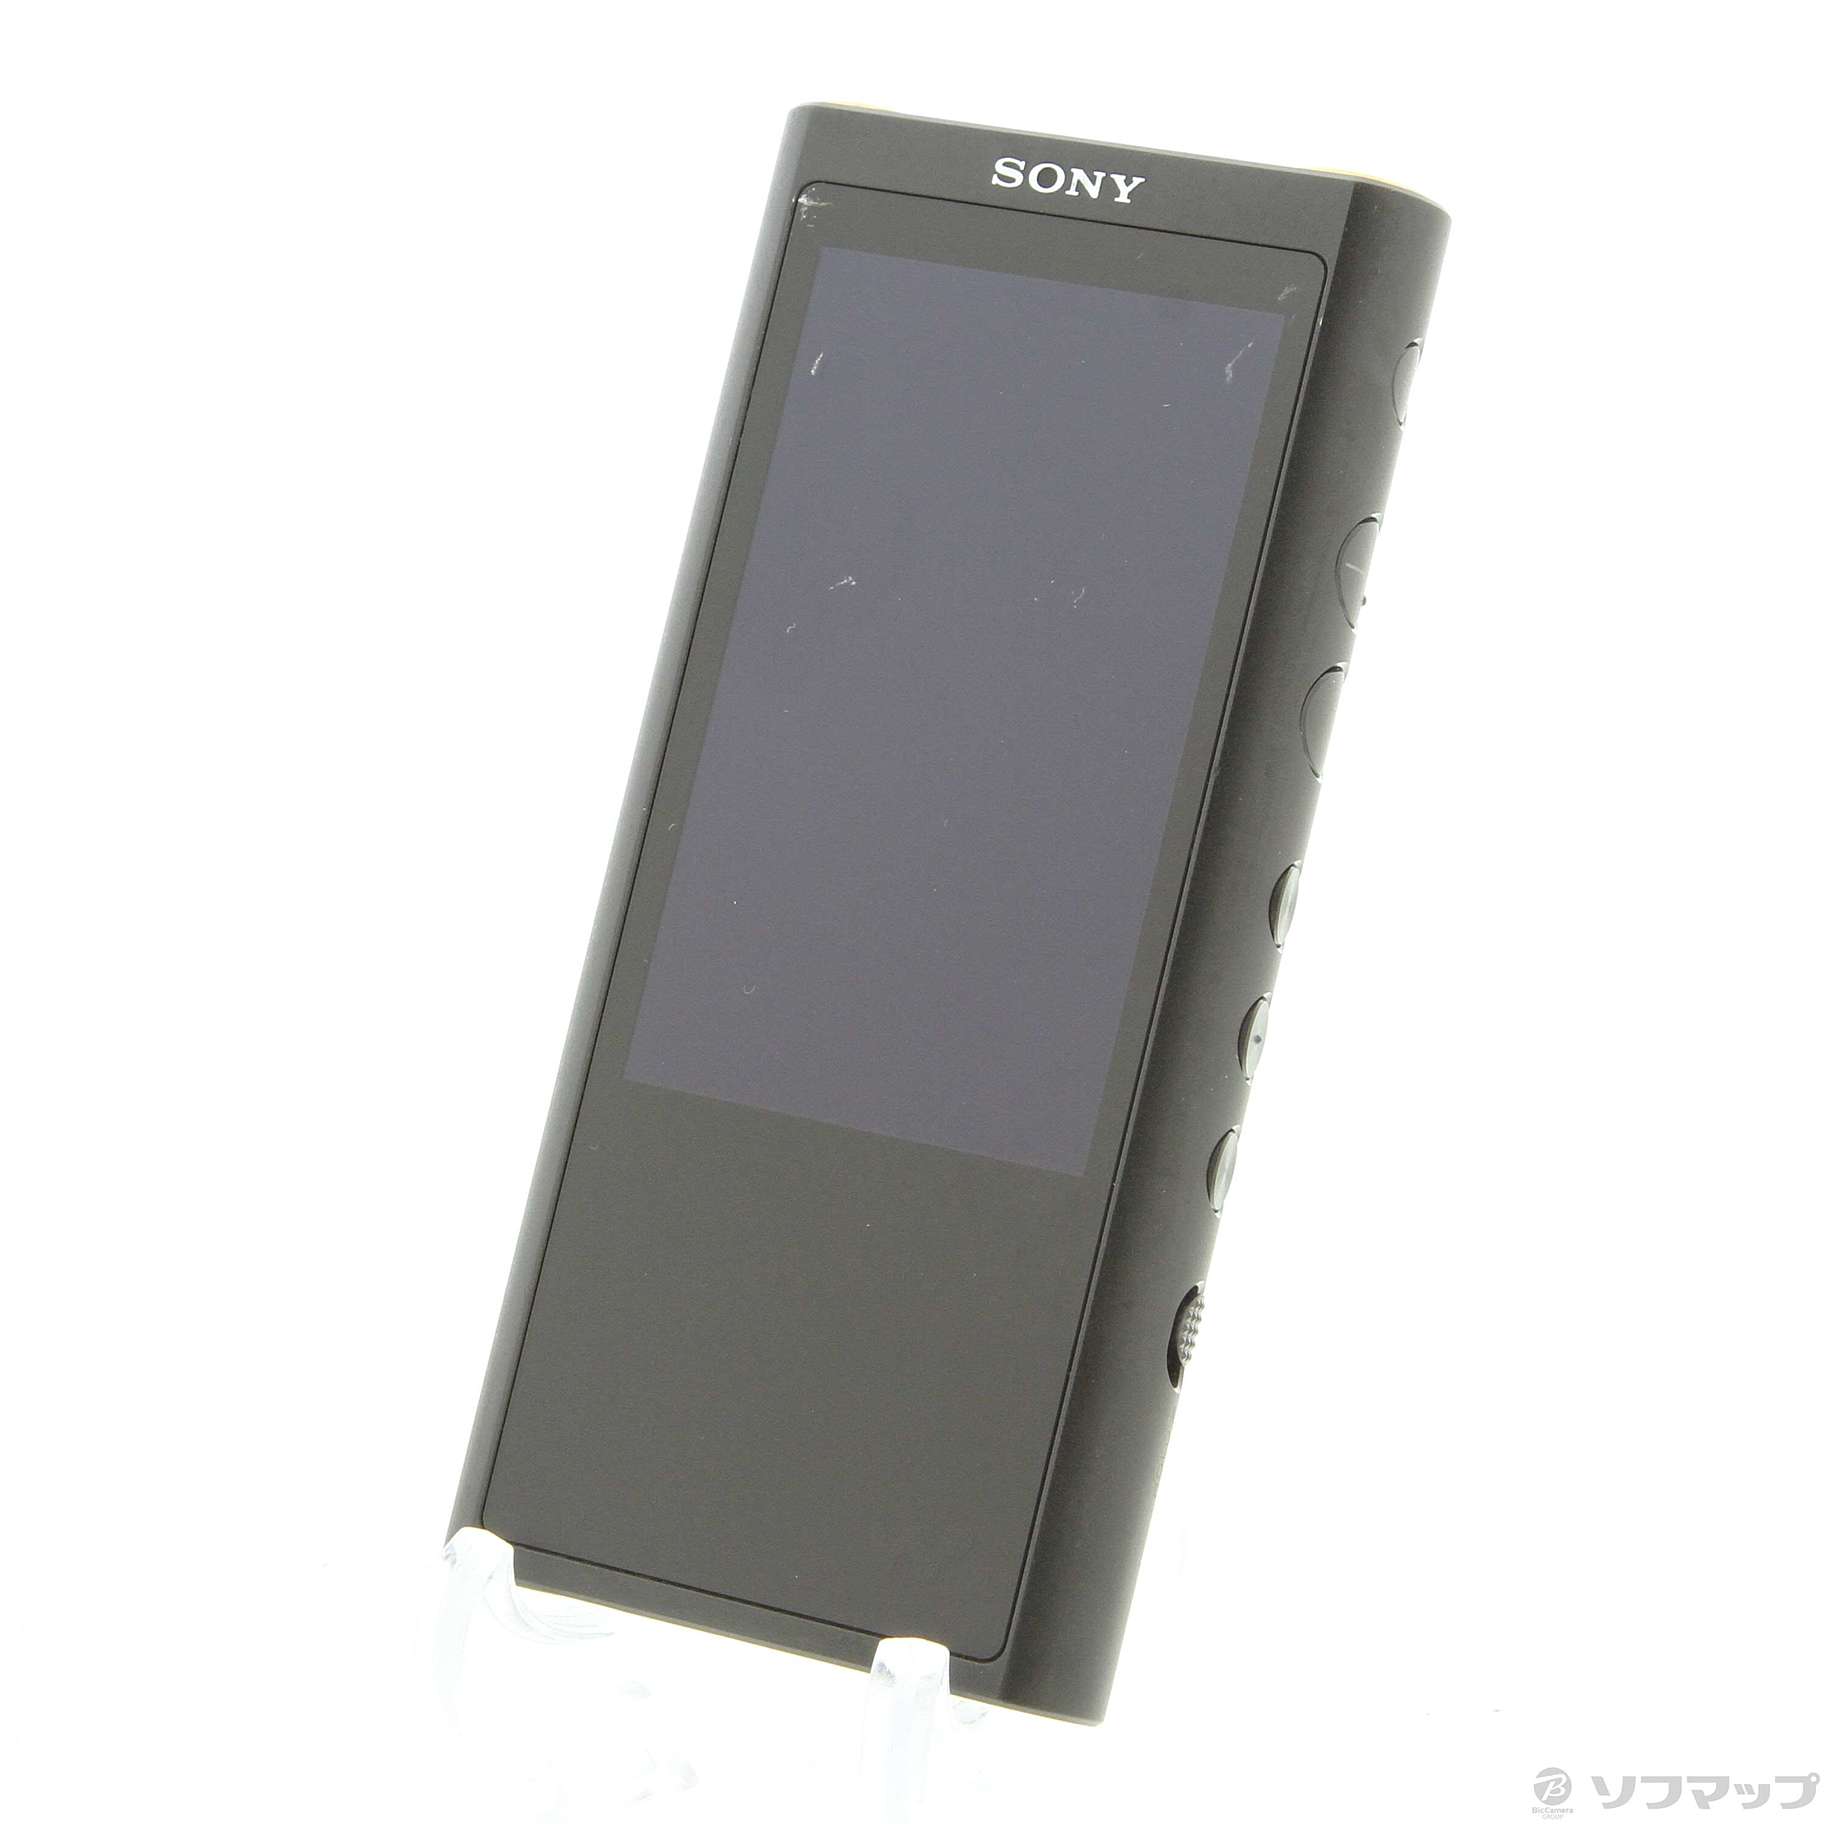 【美品】SONY WALKMAN zx300 64GB